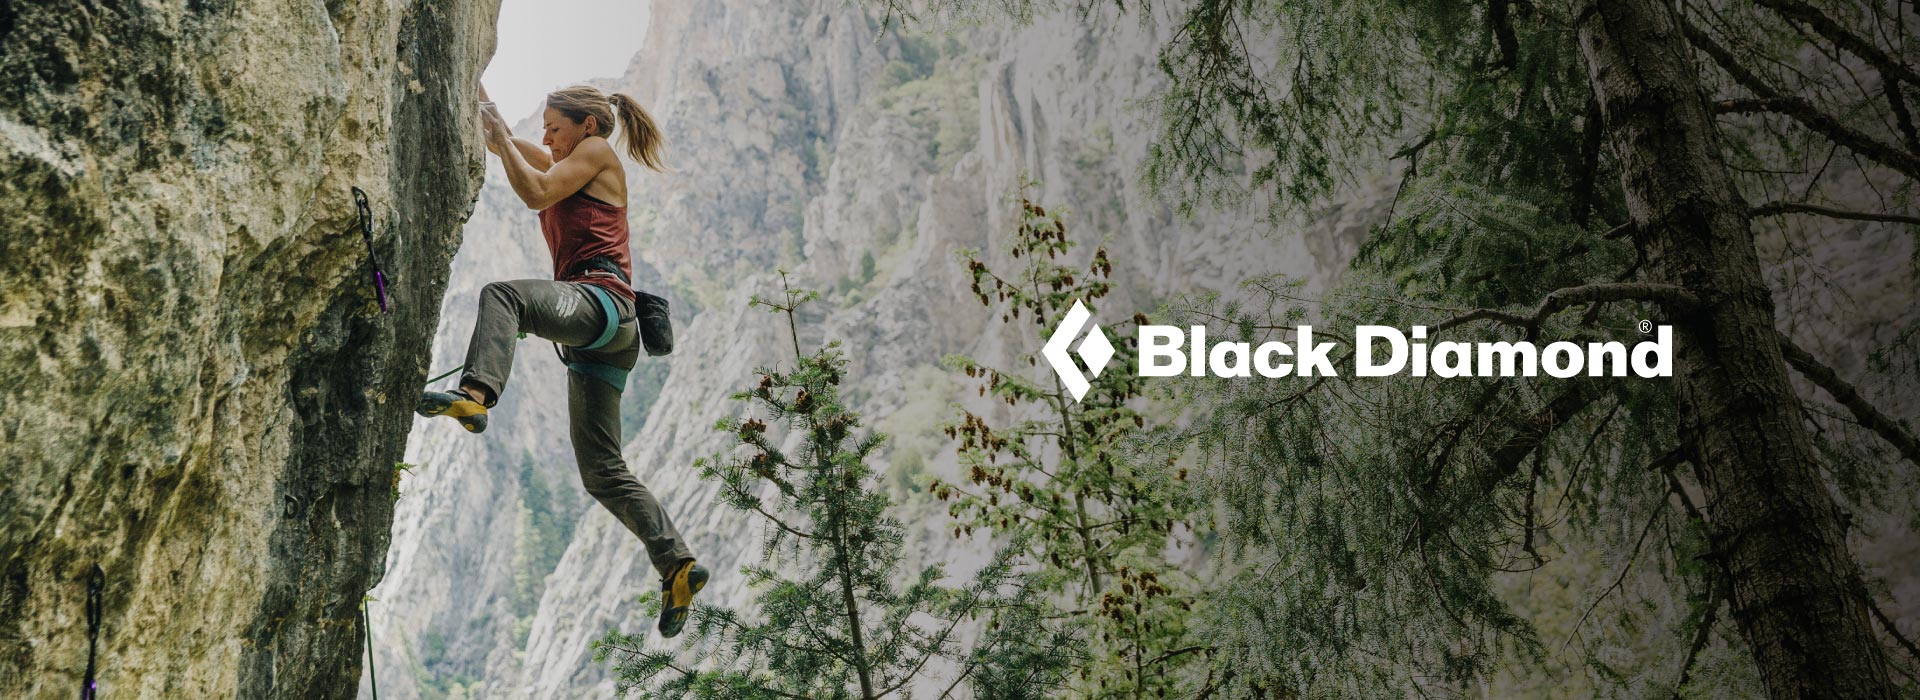 Black Diamond es una marca norteamericana especializada en fabricación de equipo técnico para escalada y montañismo como ferretería,
mochilas, linternas, zapatos, carpas y bastones. Además, cuenta con una línea
de ropa y accesorios enfocada en trekking, montañismo, escalda, trail running y lifestyle.